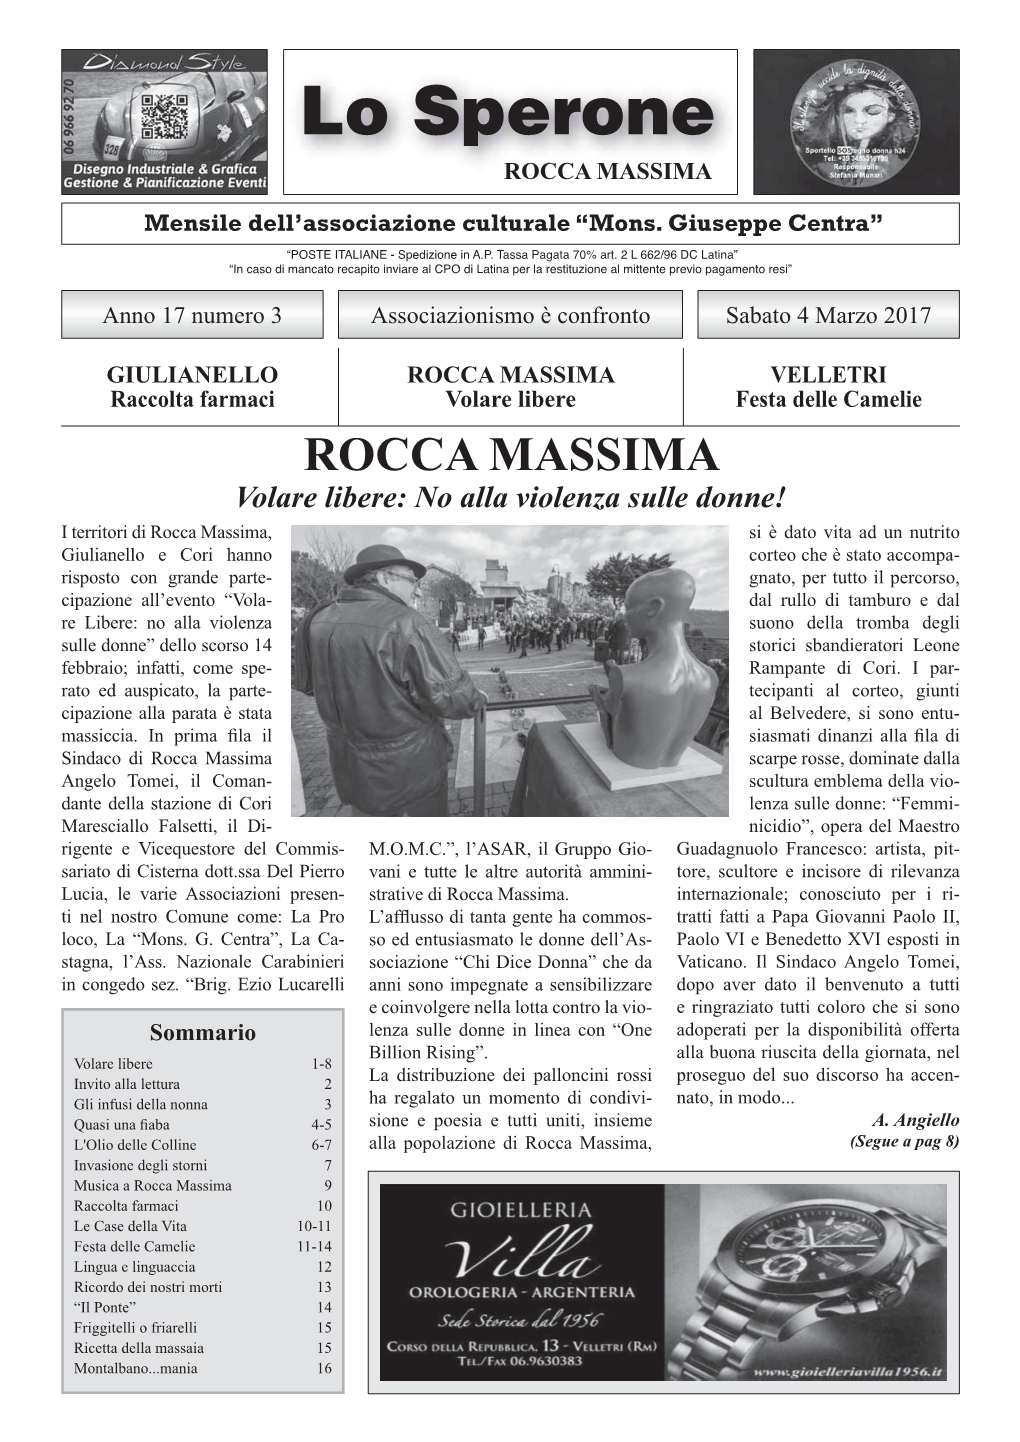 Lo Sperone Rocca Massima